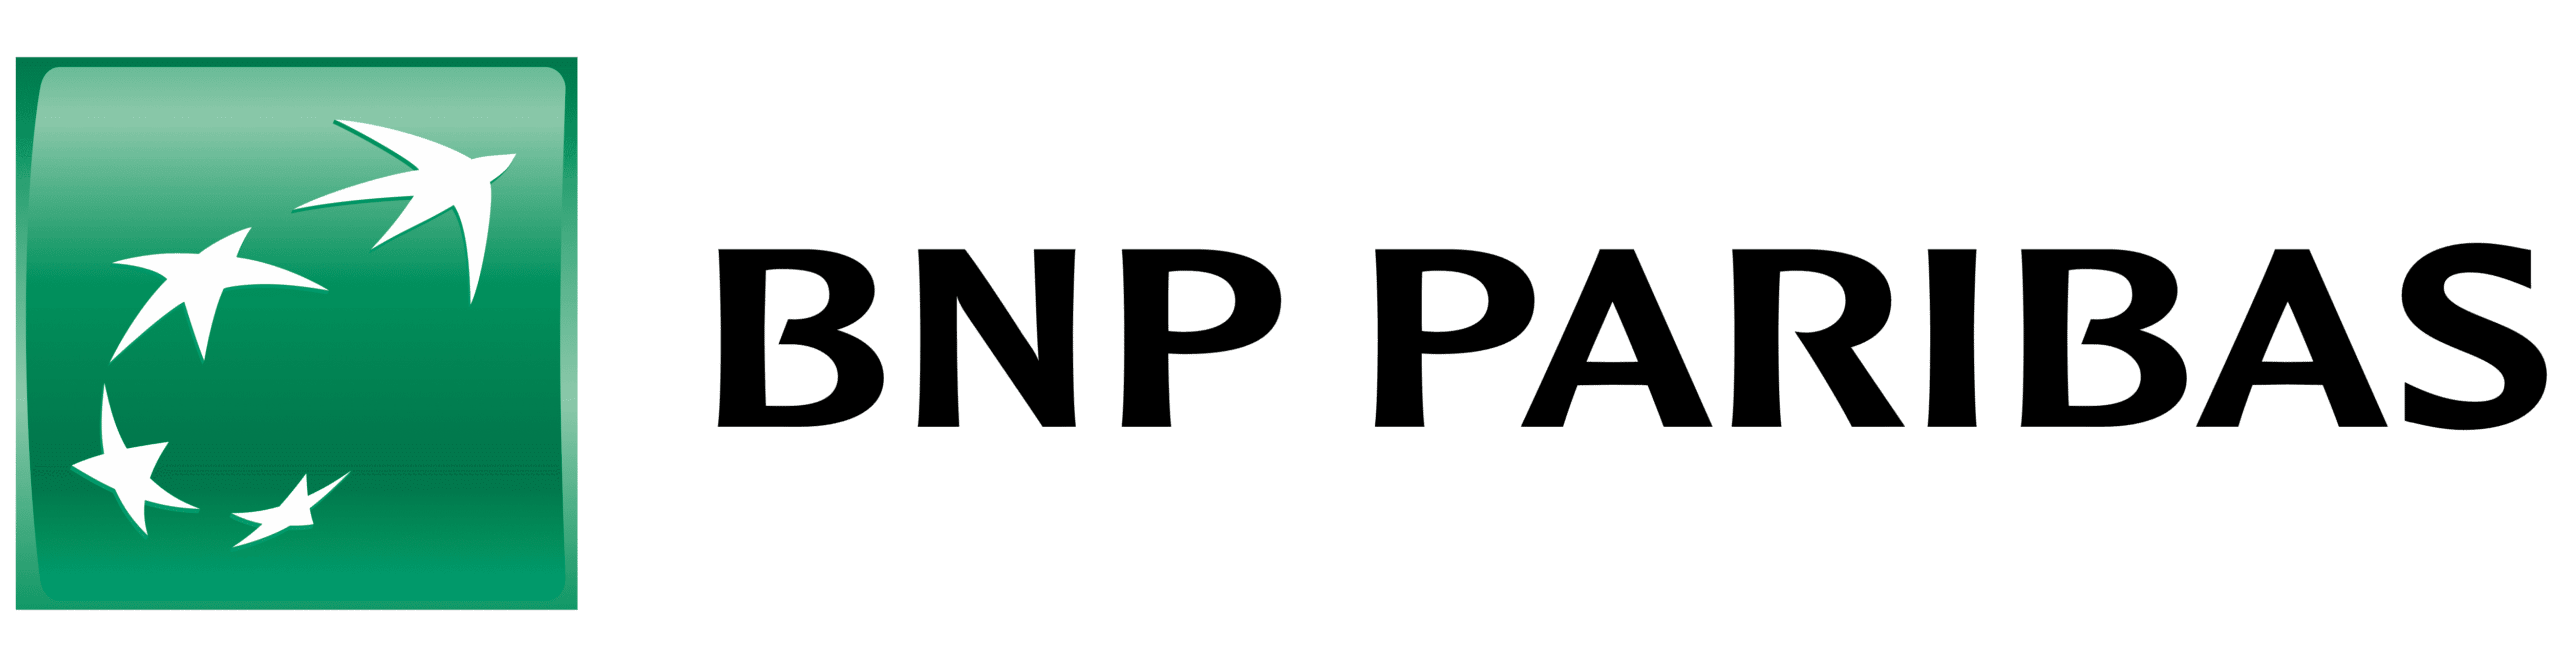 BNP Paribas tout sur « mes extras » le programme de cashback